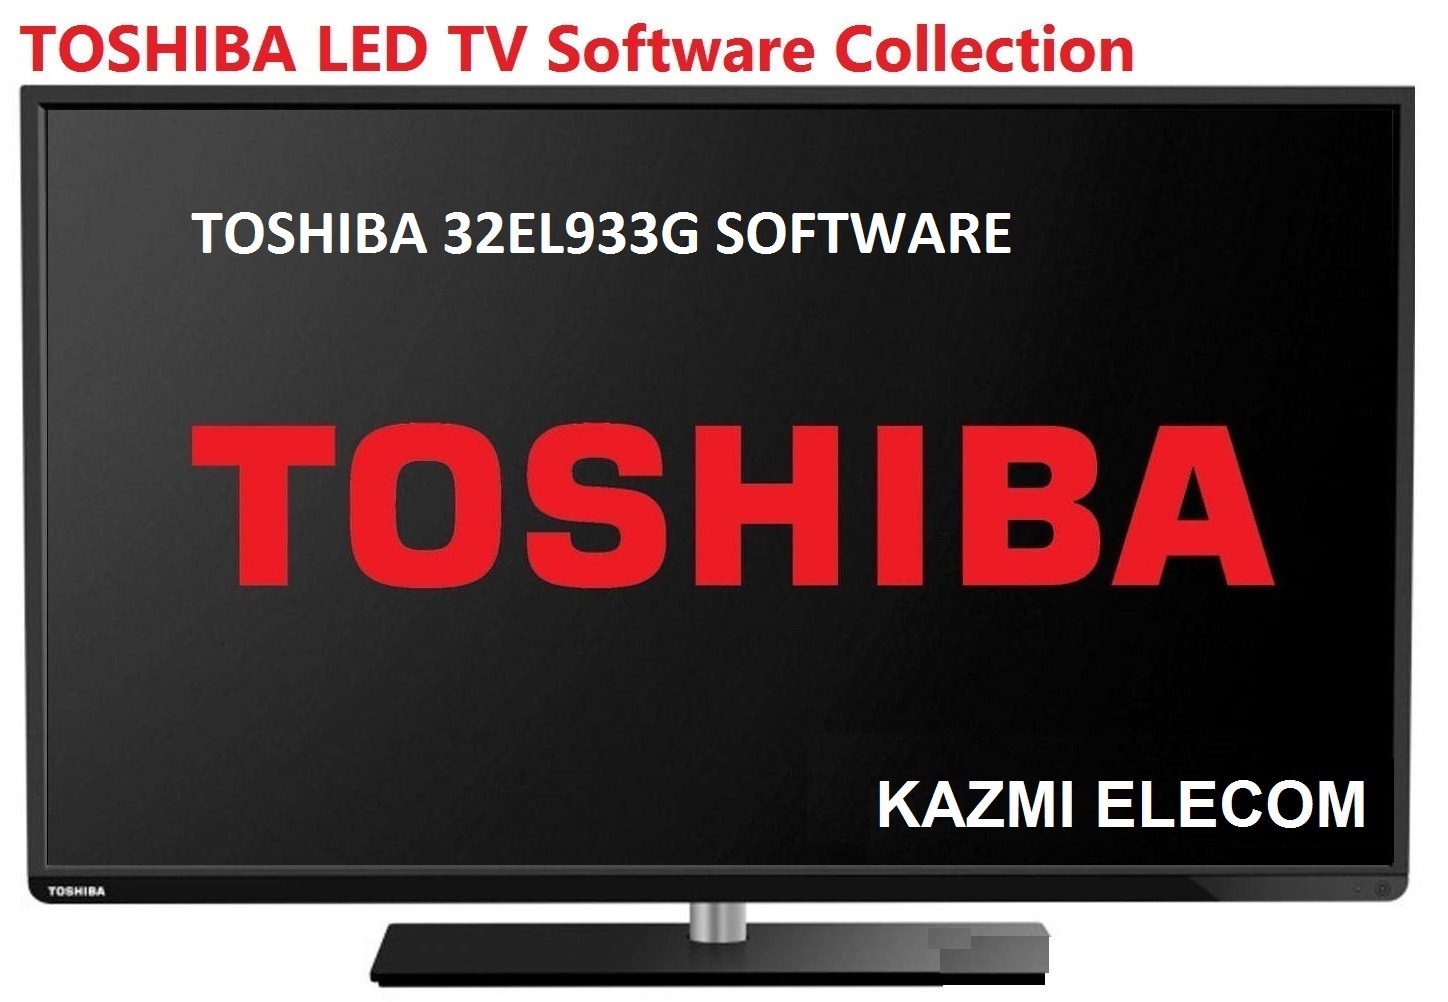 Toshiba 32El933G